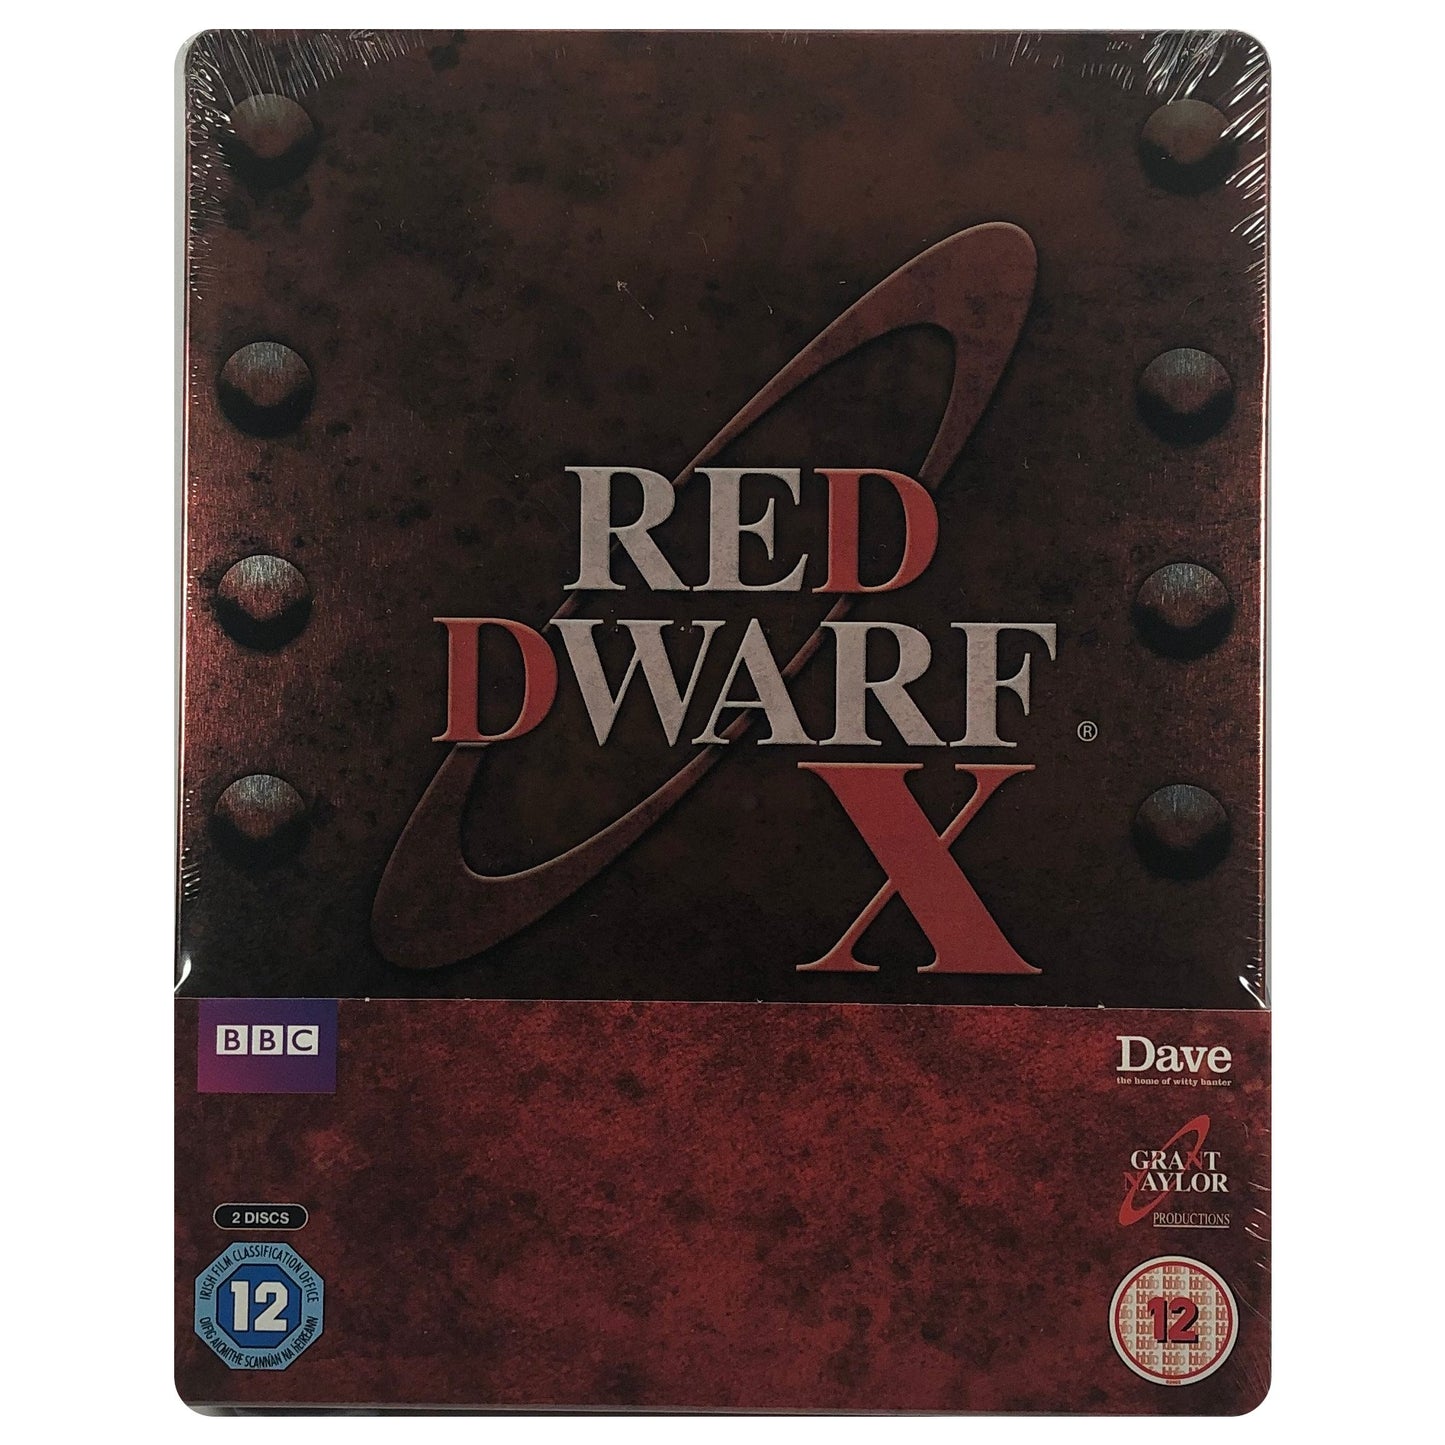 Red Dwarf X Blu-Ray Steelbook